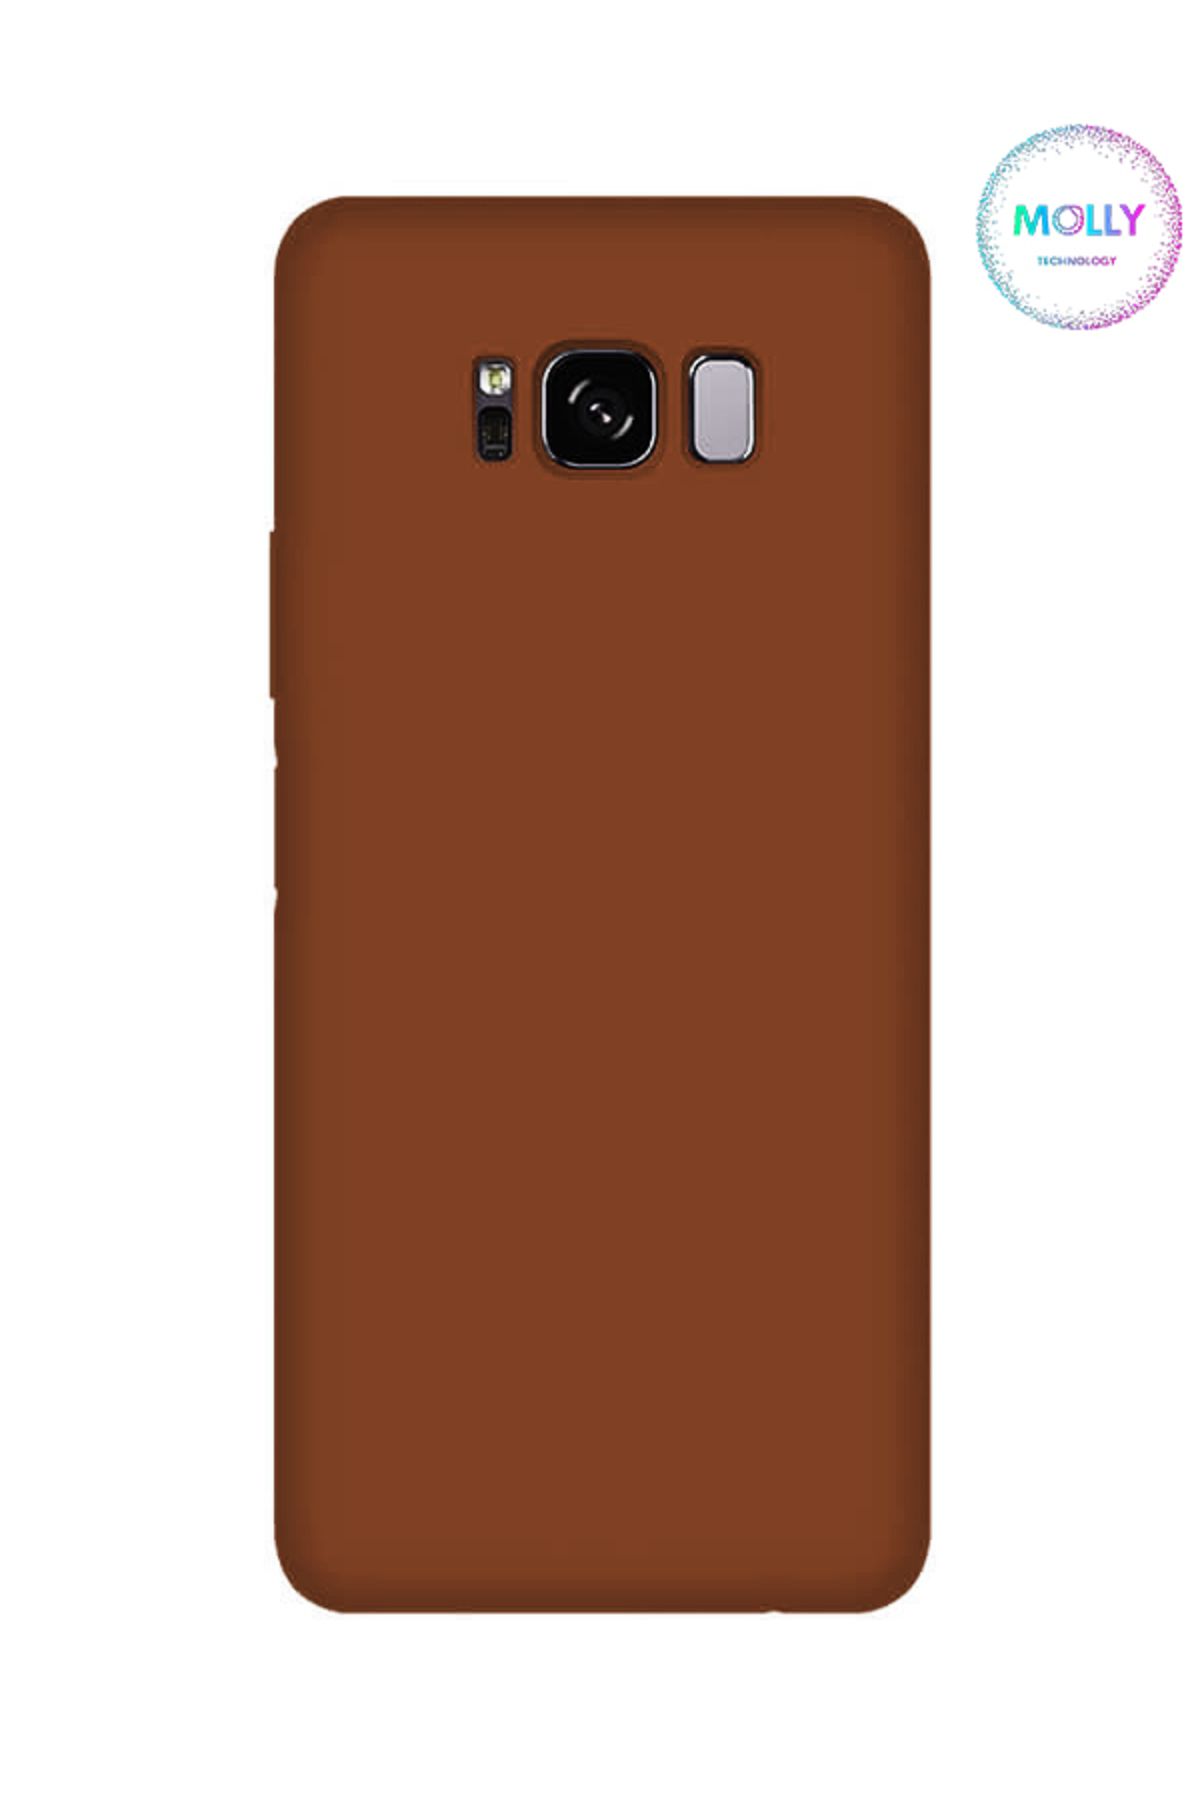 Molly Samsung Galaxy S8 İçin Kahverengi Liquid İçi Kadife Silikon Kılıf